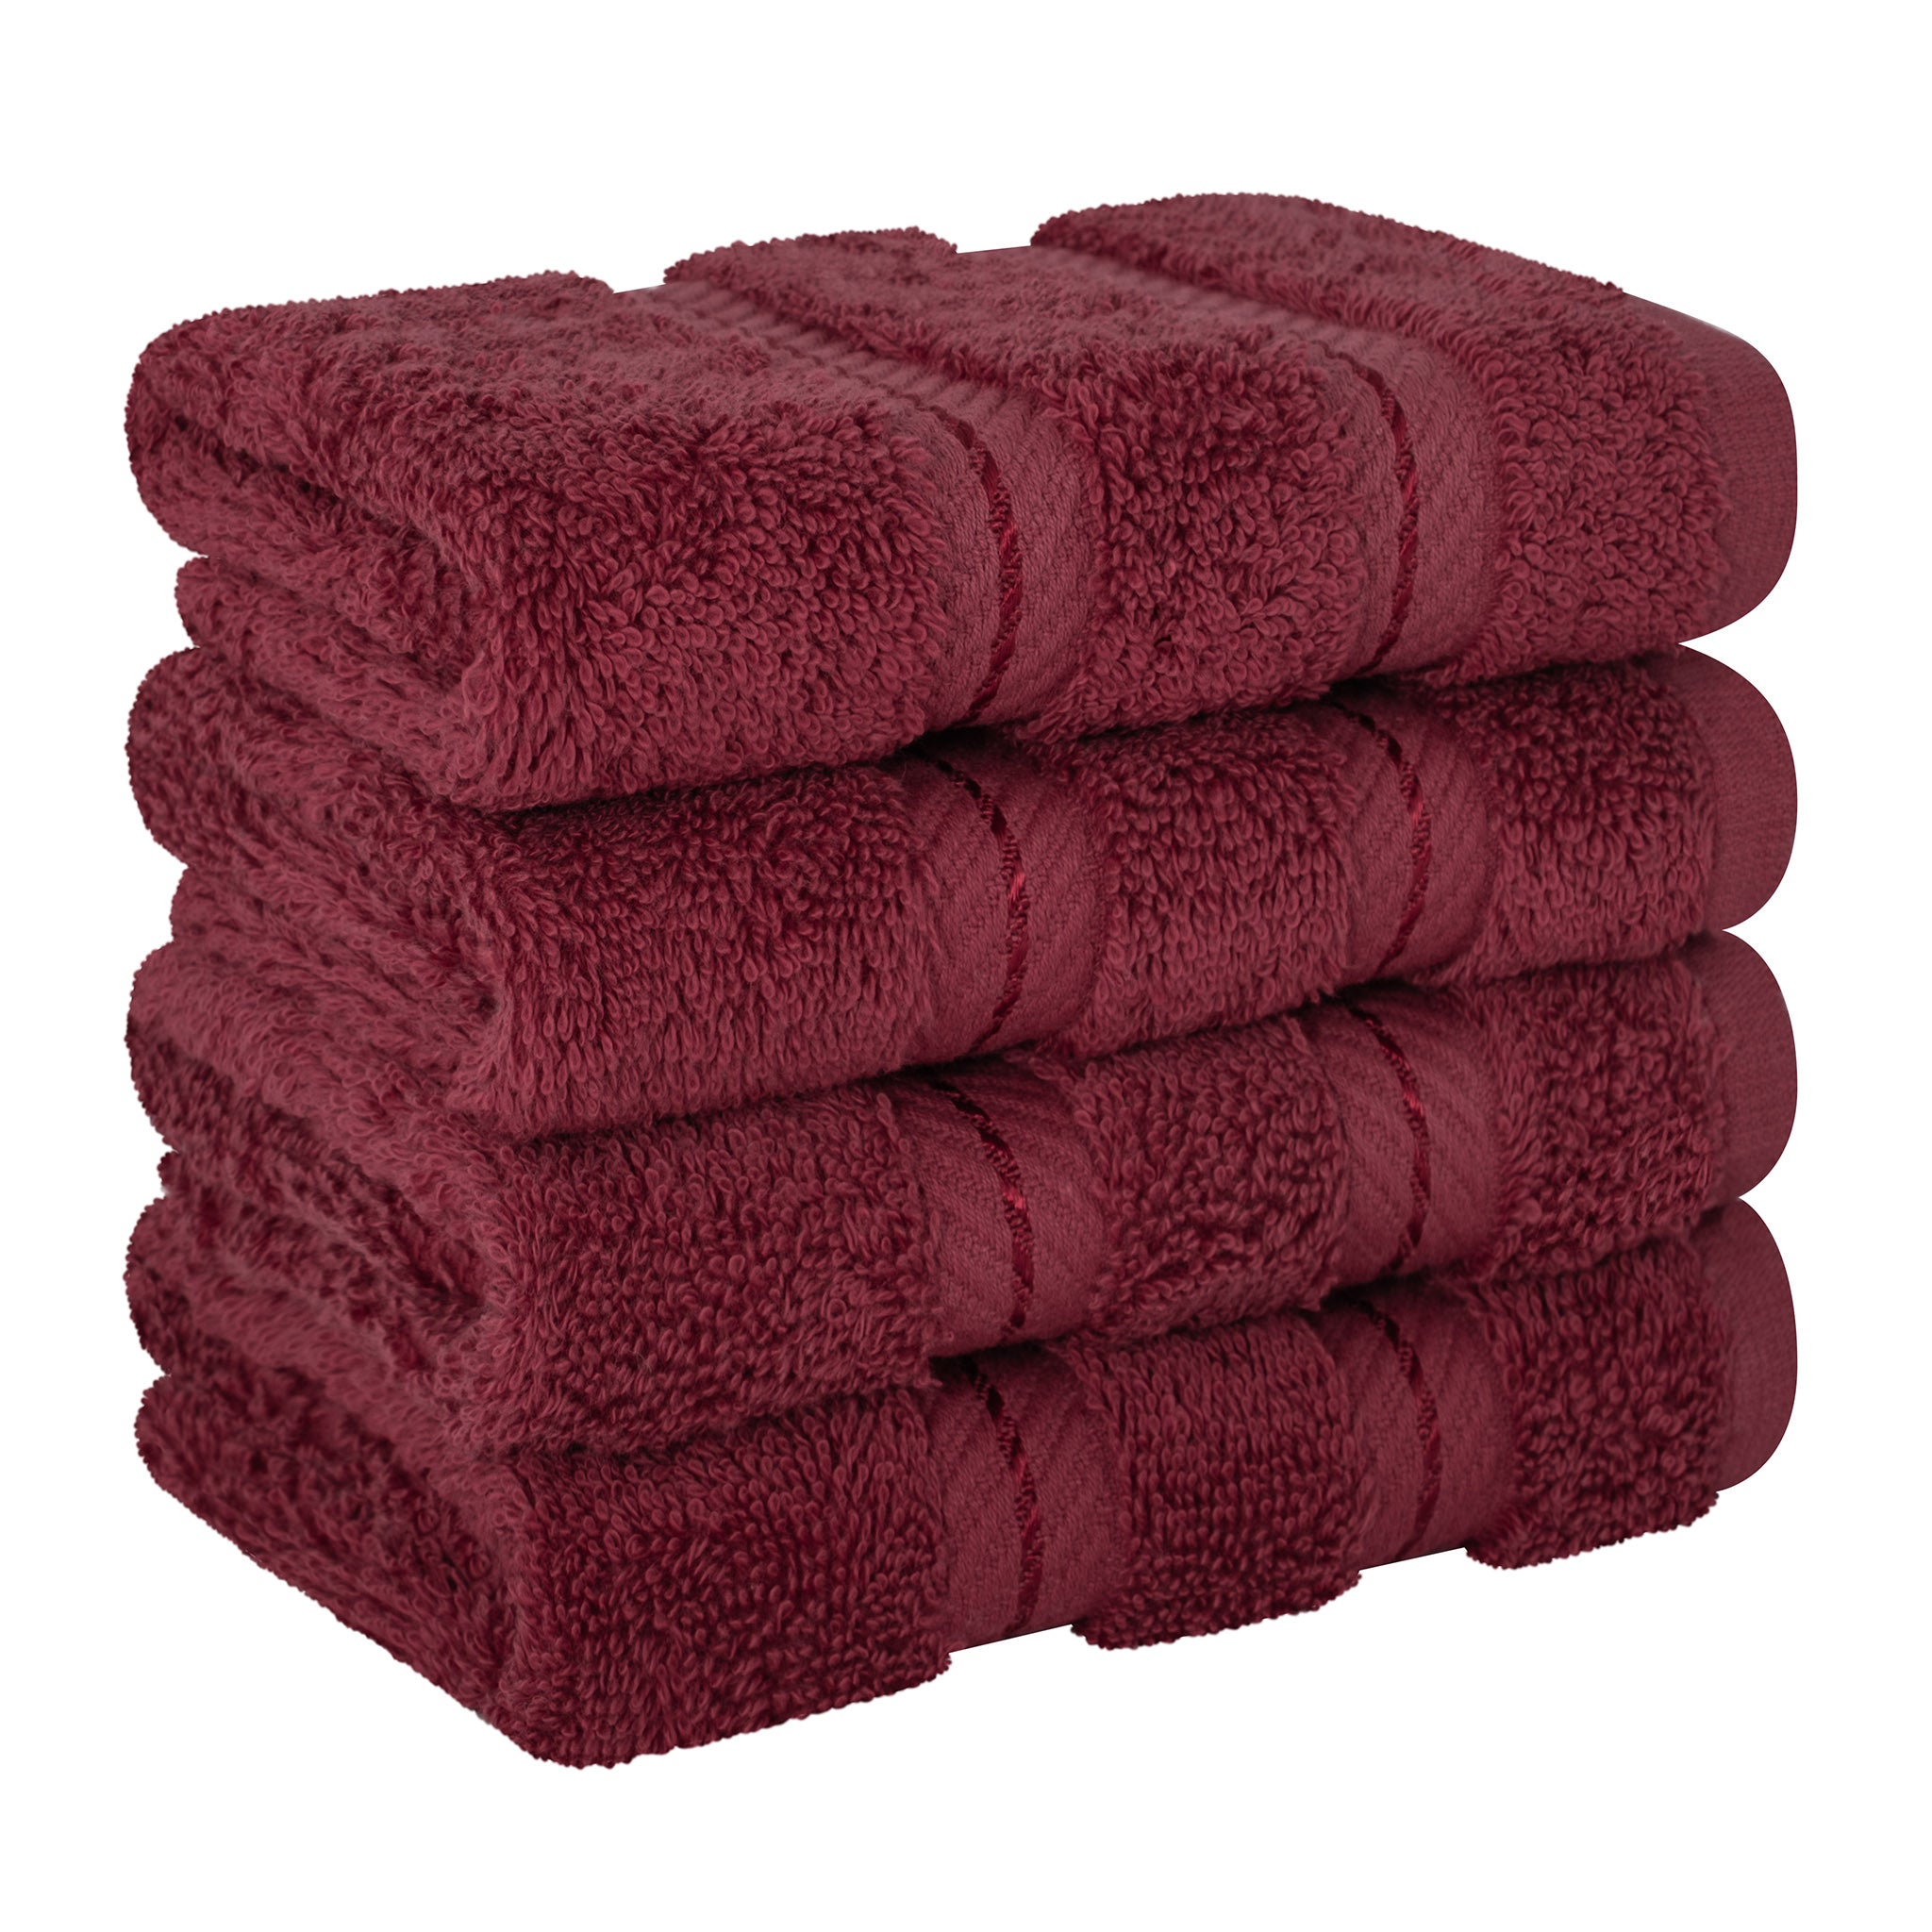  American Soft Linen 100% Turkish Cotton 4 Piece Washcloth Set - Wholesale - bordeaux-red-6